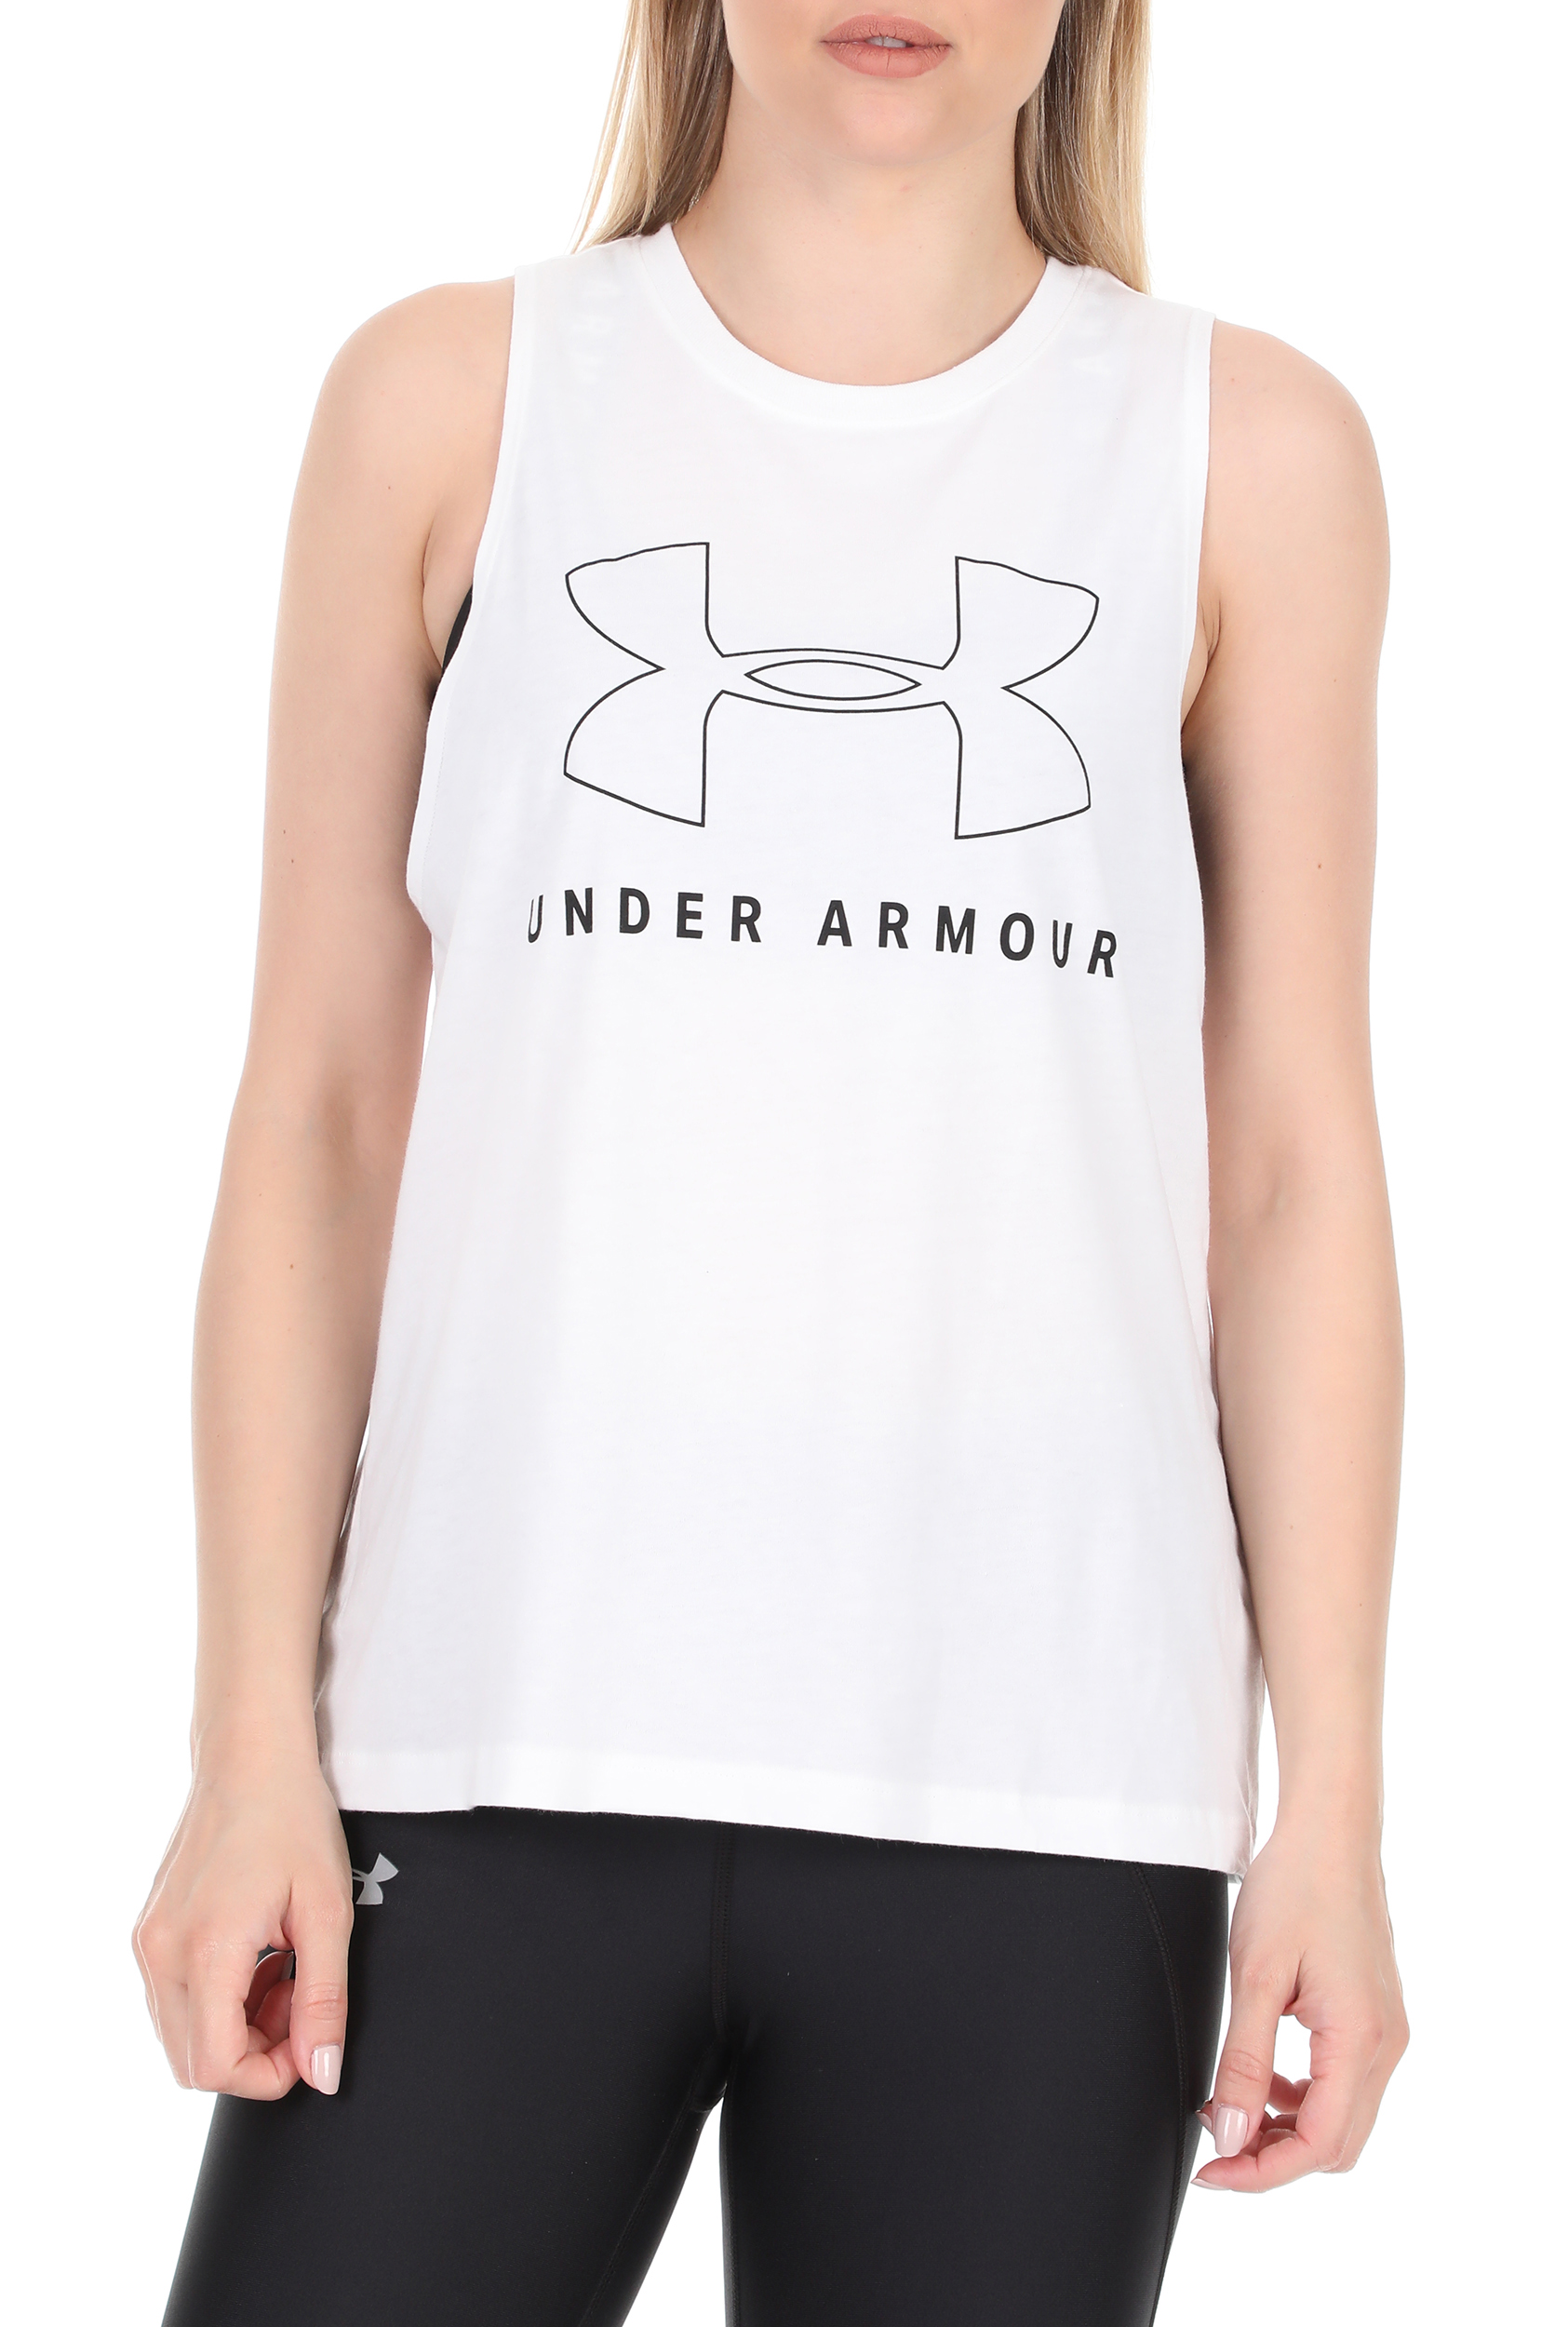 Γυναικεία/Ρούχα/Αθλητικά/T-shirt-Τοπ UNDER ARMOUR - Γυναικεία αμάνικη μπλούζα UNDER ARMOUR SPORTSTYLE GRAPHIC MUS λευκή